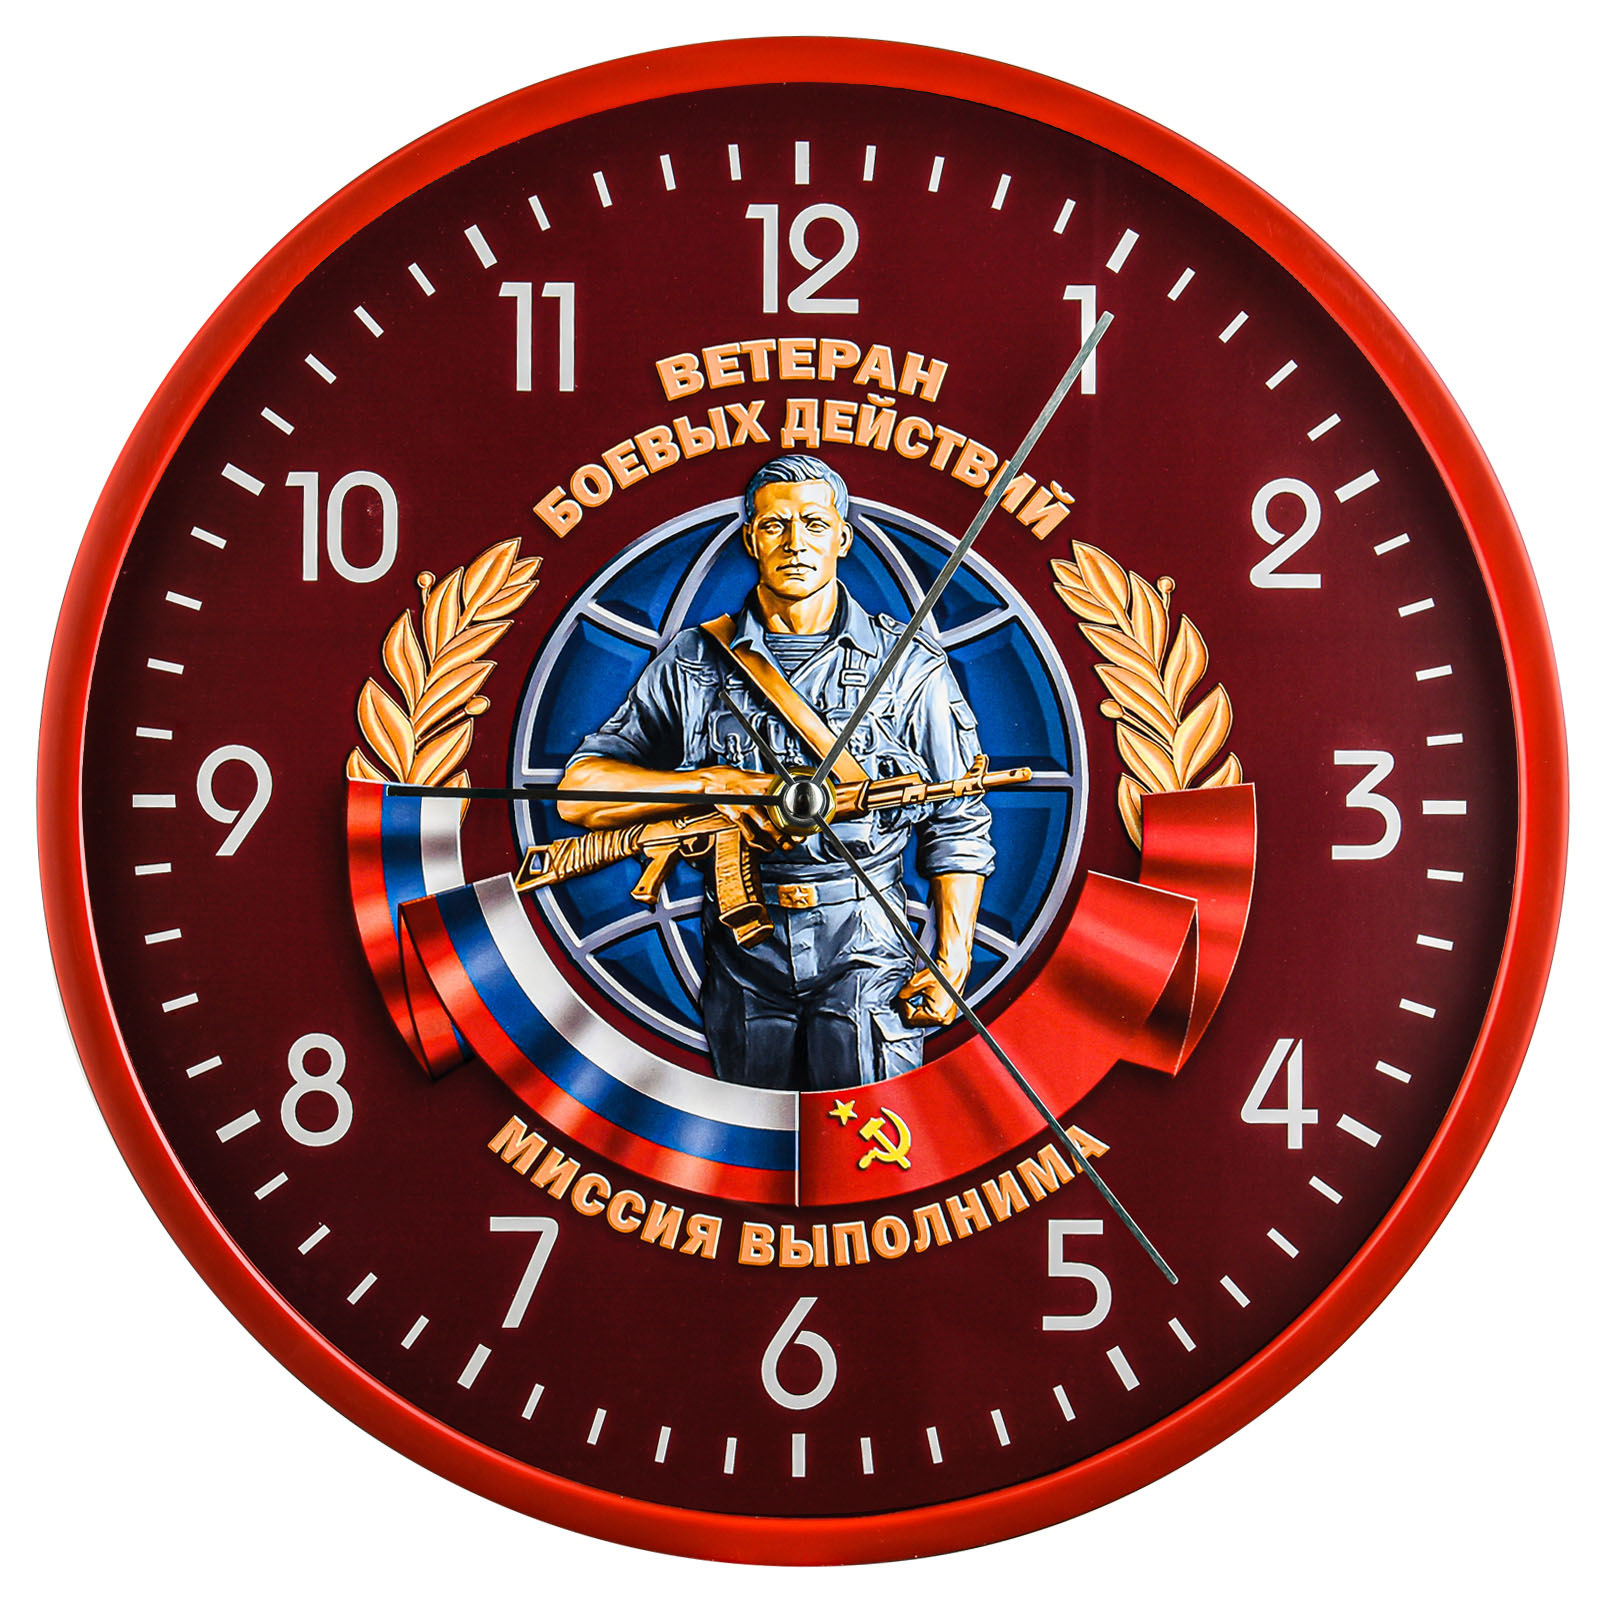 Купить подарочные часы Ветерану боевых действий